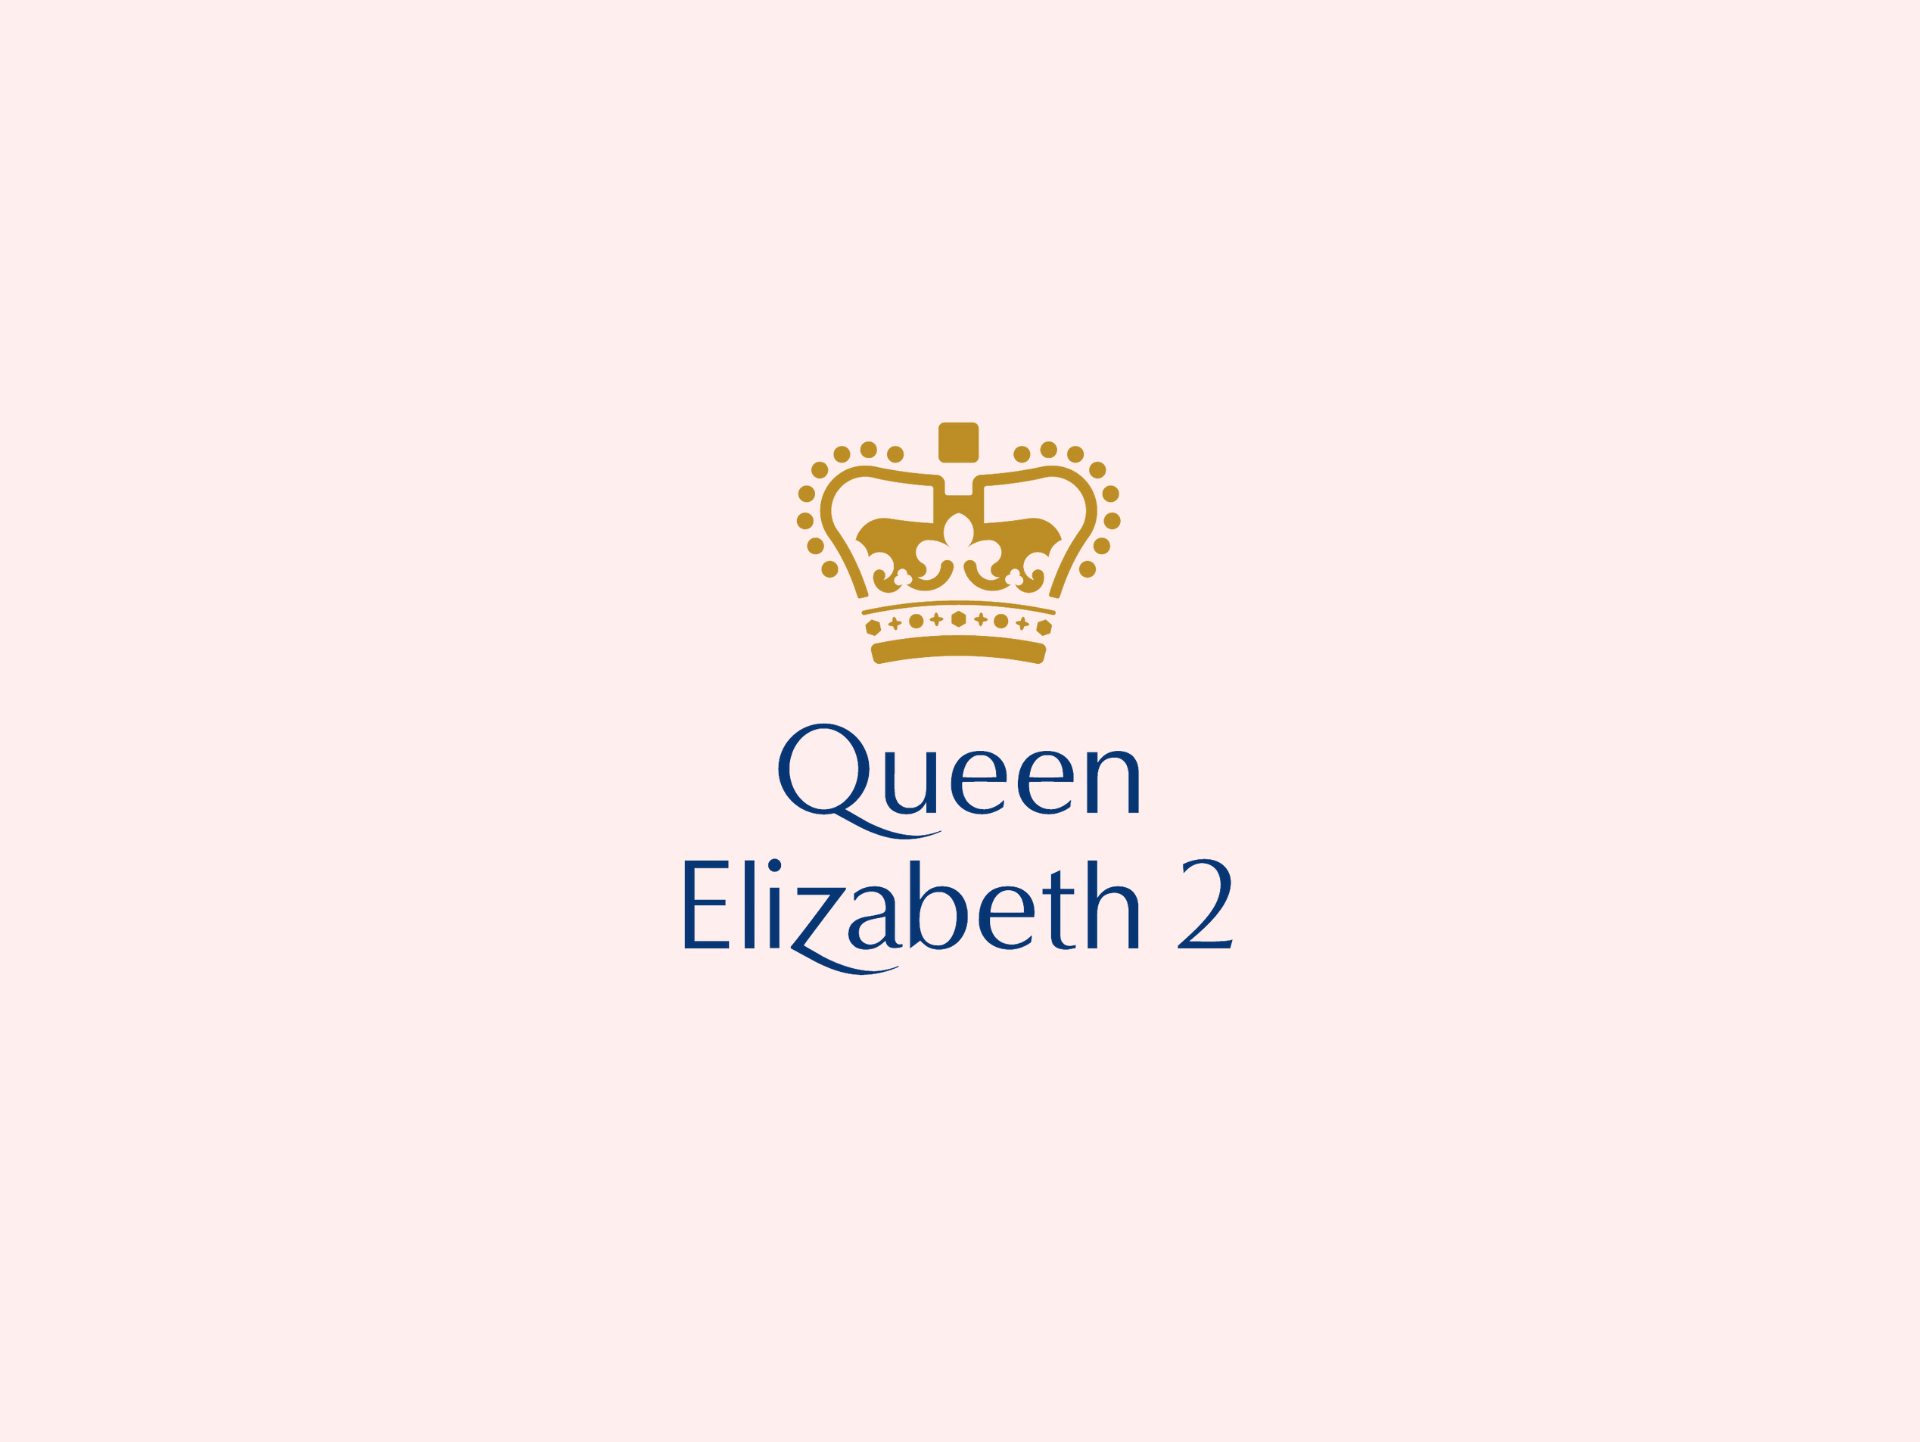 Queen Elizabeth 2 Hotel